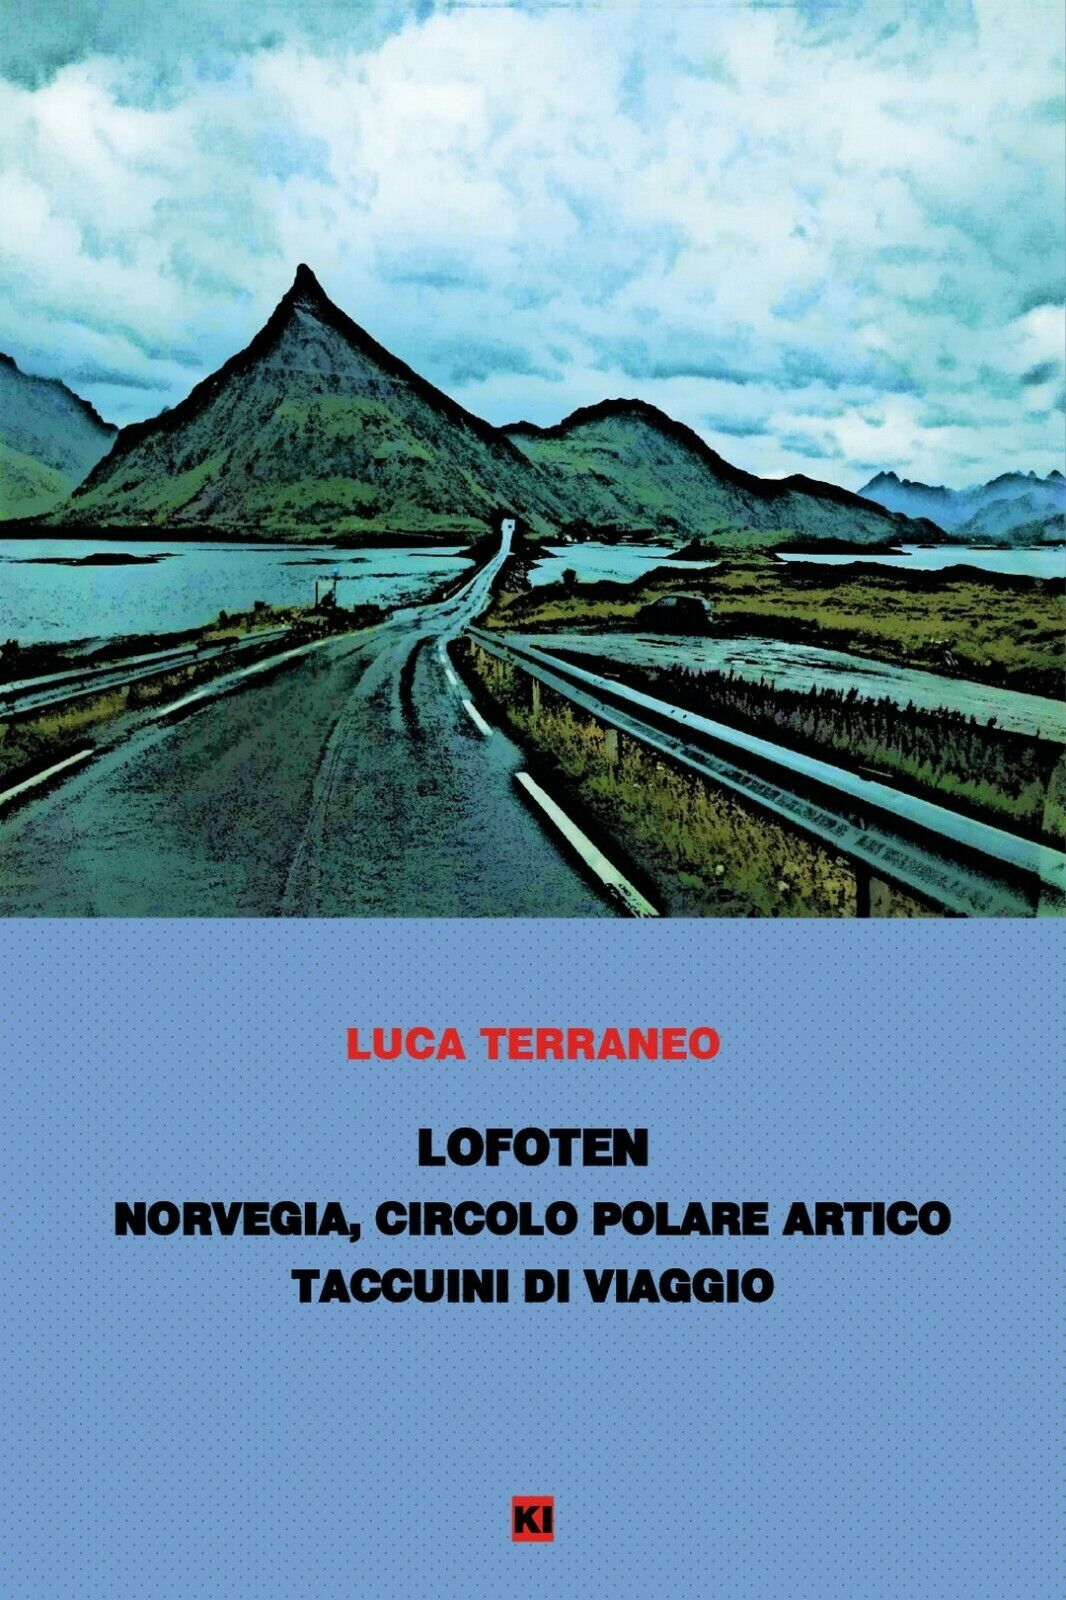 Lofoten - taccuini di viaggio  di Luca Terraneo,  2020,  Youcanprint libro usato